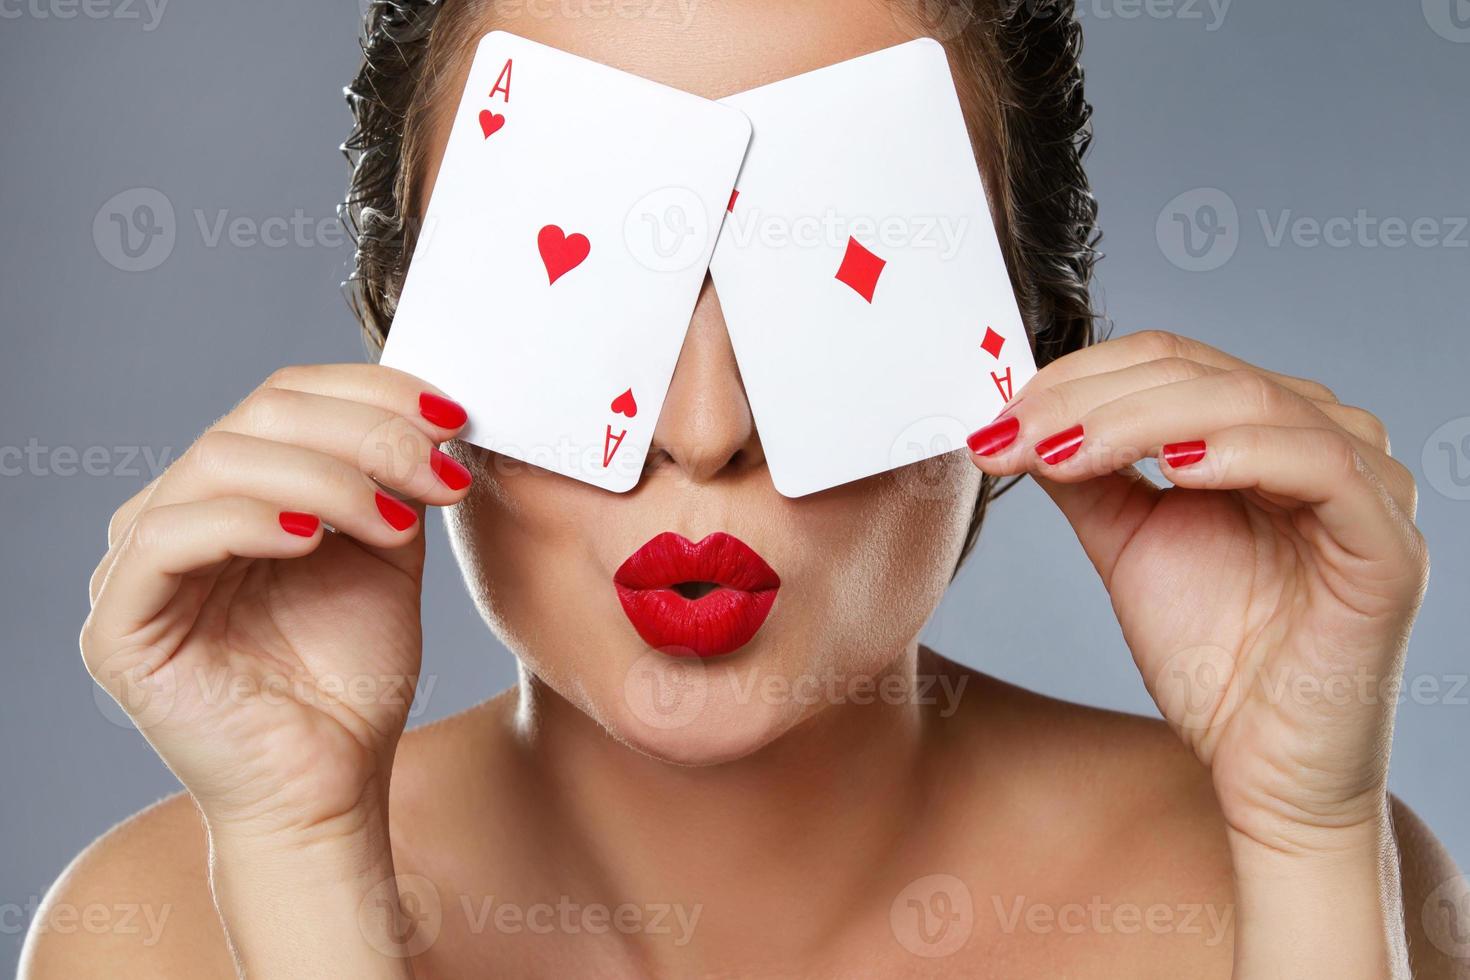 mulher com lábios vermelhos está segurando dois ases nas mãos foto